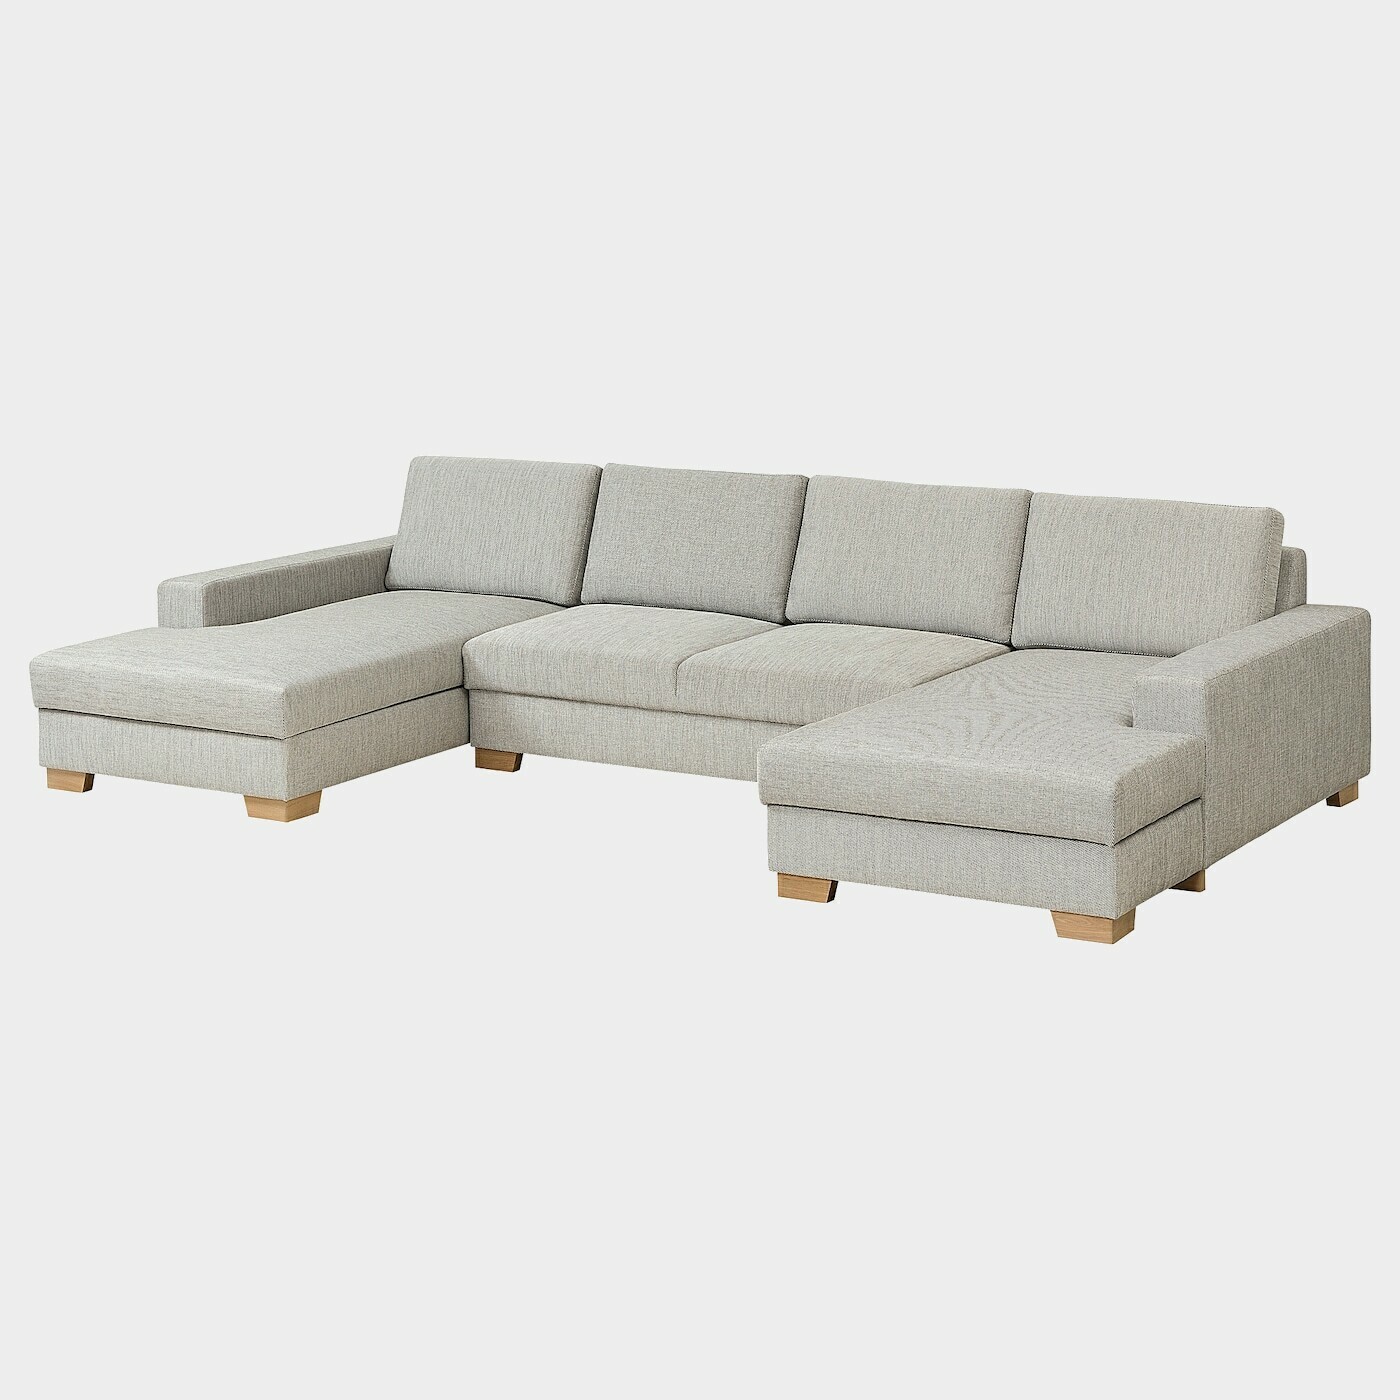 SÖRVALLEN 4er-Sofa mit Récamieren  -  - Möbel Ideen für dein Zuhause von Home Trends. Möbel Trends von Social Media Influencer für dein Skandi Zuhause.